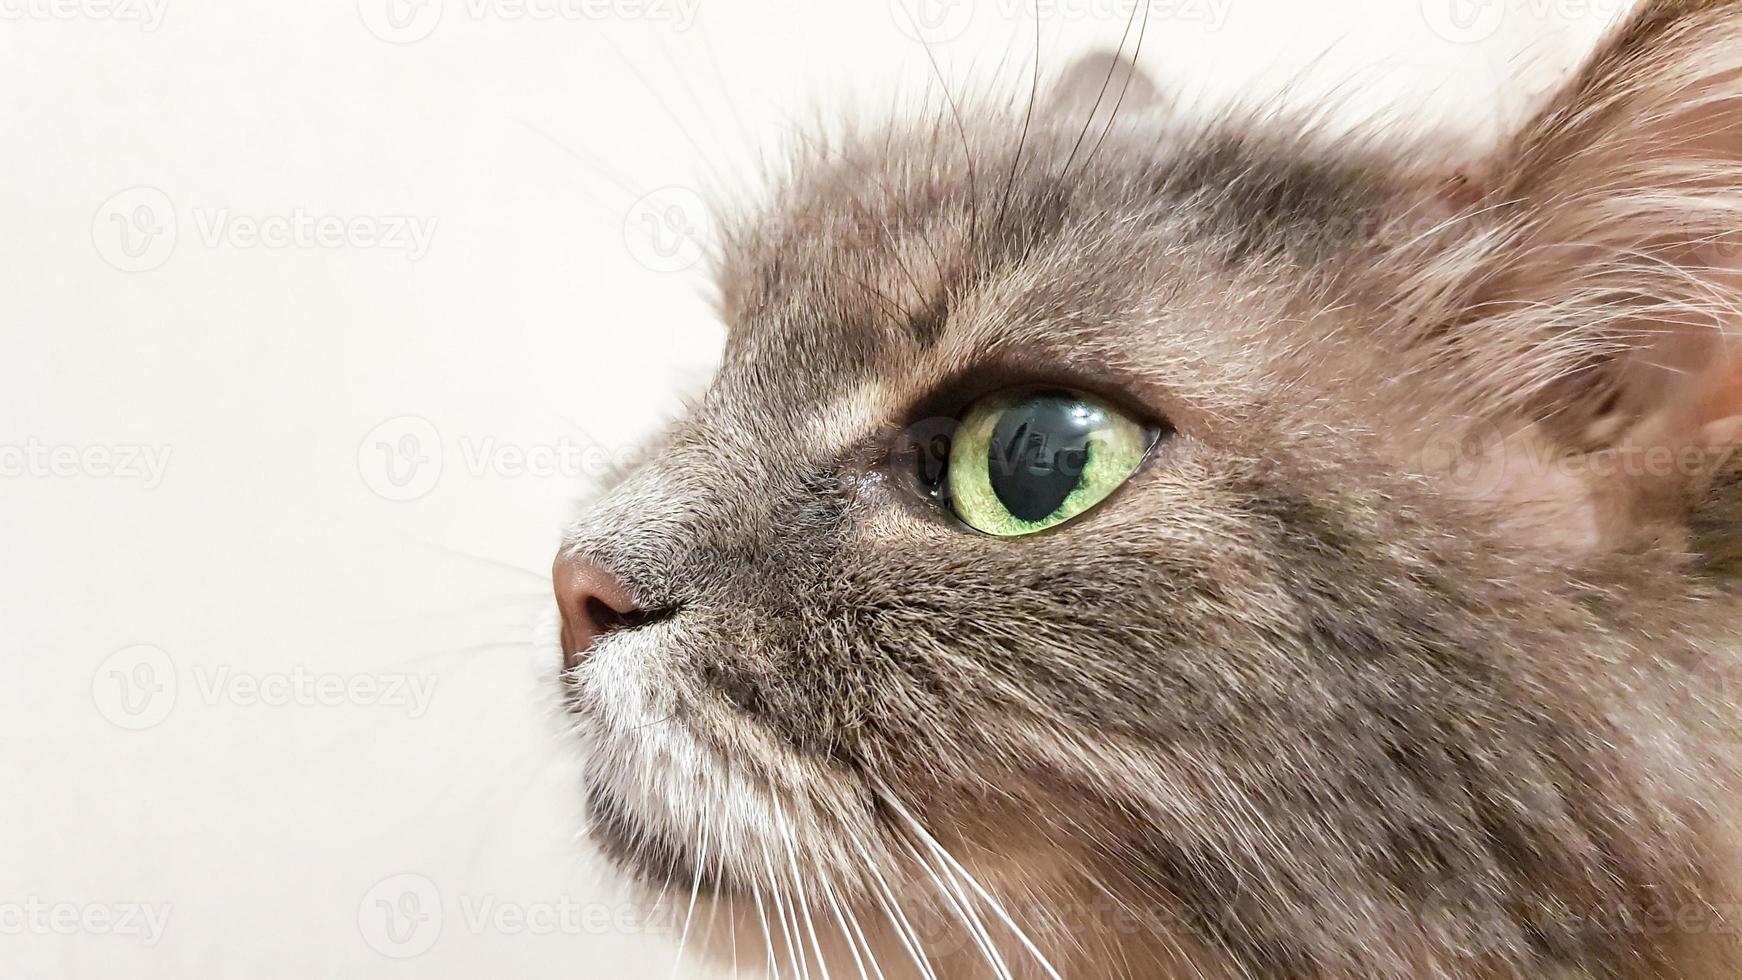 donkergroen kattenoog close-up. grijze volwassen langharige kattenserie. kat hoofd close-up op een witte muur achtergrond. kat kijkt naar de eigenaar tijdens het wachten op eten foto